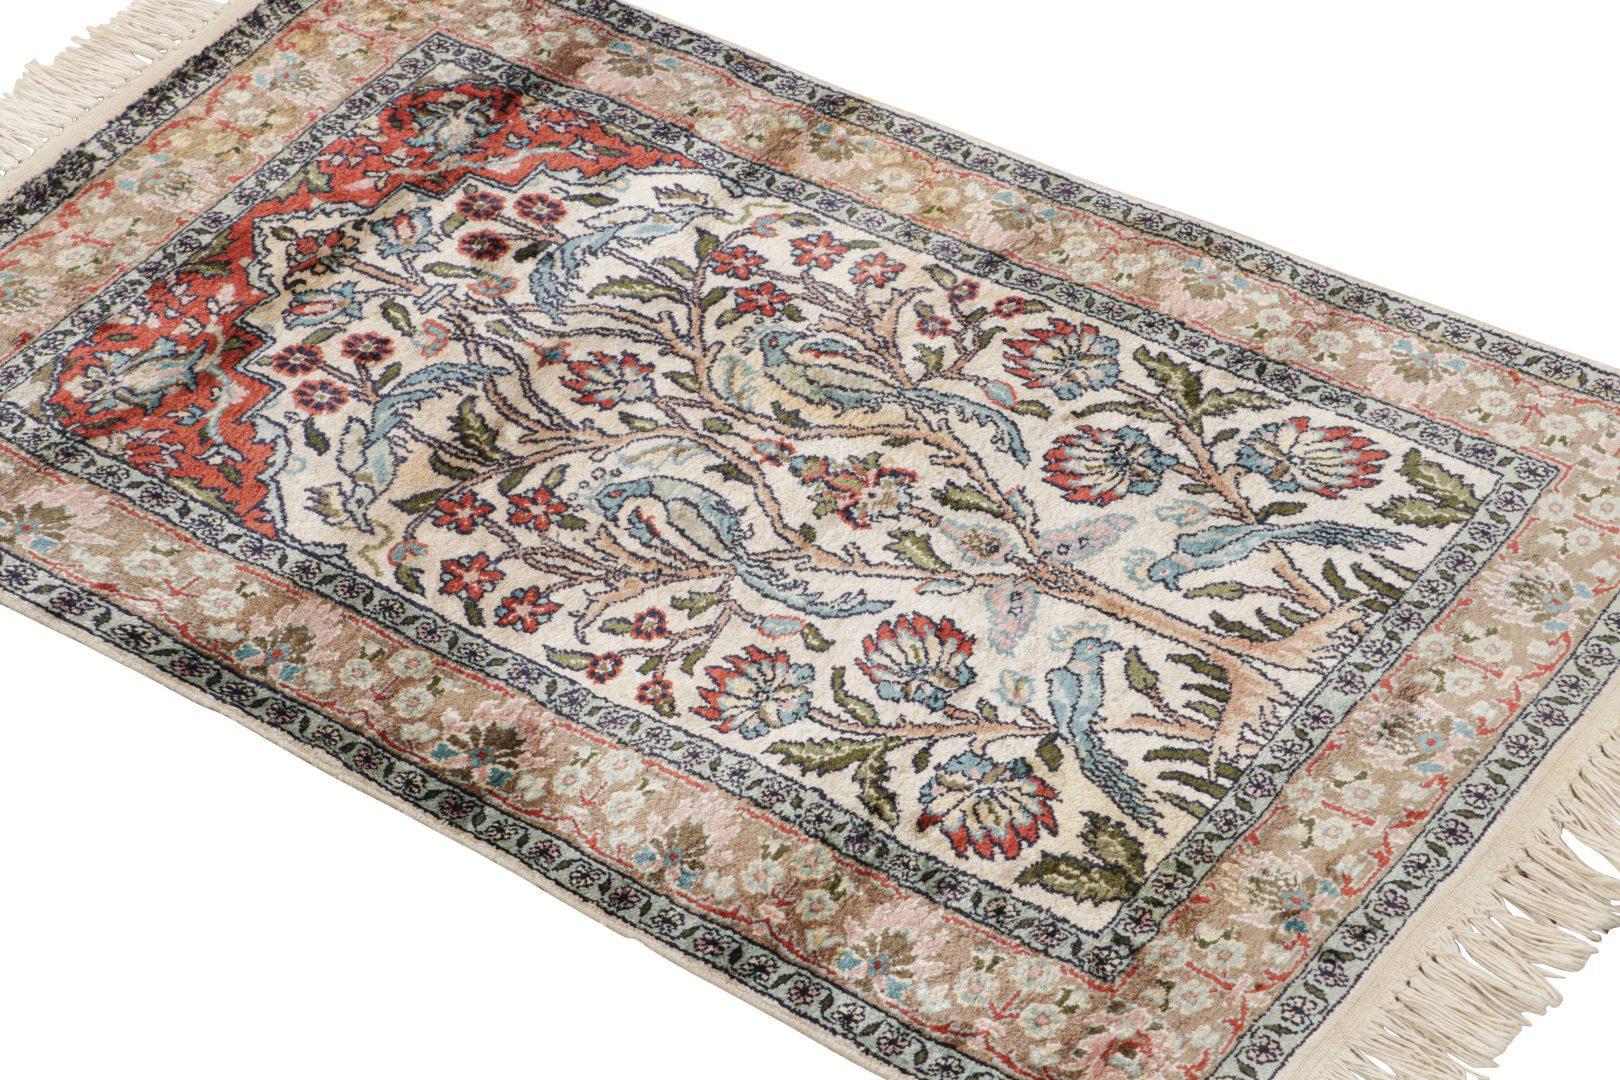 Dieser antike Kaschmir-Teppich im Format 2×3 aus handgeknüpfter Wolle und Seide (ca. 1920-1930) ist eine aufregende Neuentdeckung aus der Sammlung seltener indischer Teppiche von Rug & Kilim. 

Über das Design:

Helle Beige- und Weißtöne  sowohl im